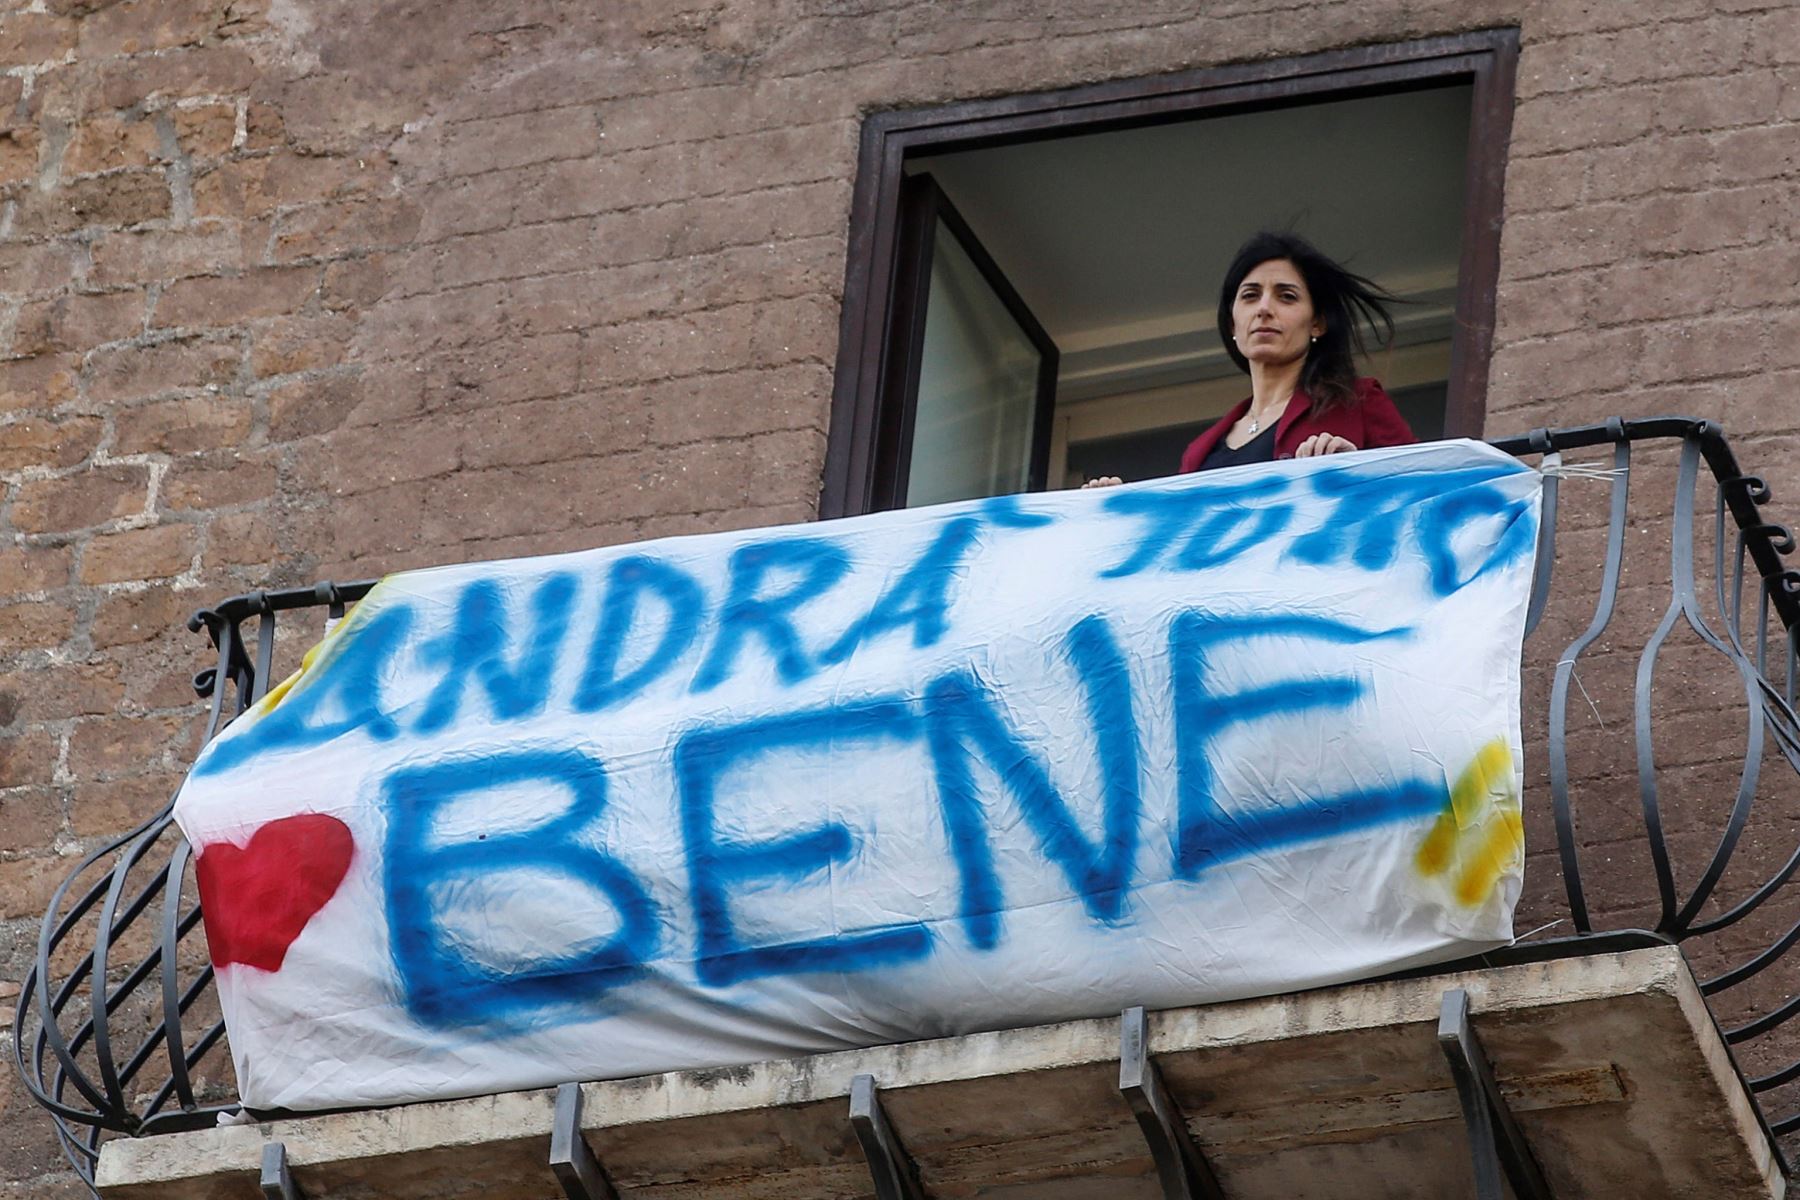 La alcaldesa de Roma, Virginia Raggi, coloca una pancarta que dice "todo va a estar bien", desde el balcón de su estudio, debido al brote de coronavirus y las medidas de cierre posteriores para contener la propagacióN.
Foto: EFE